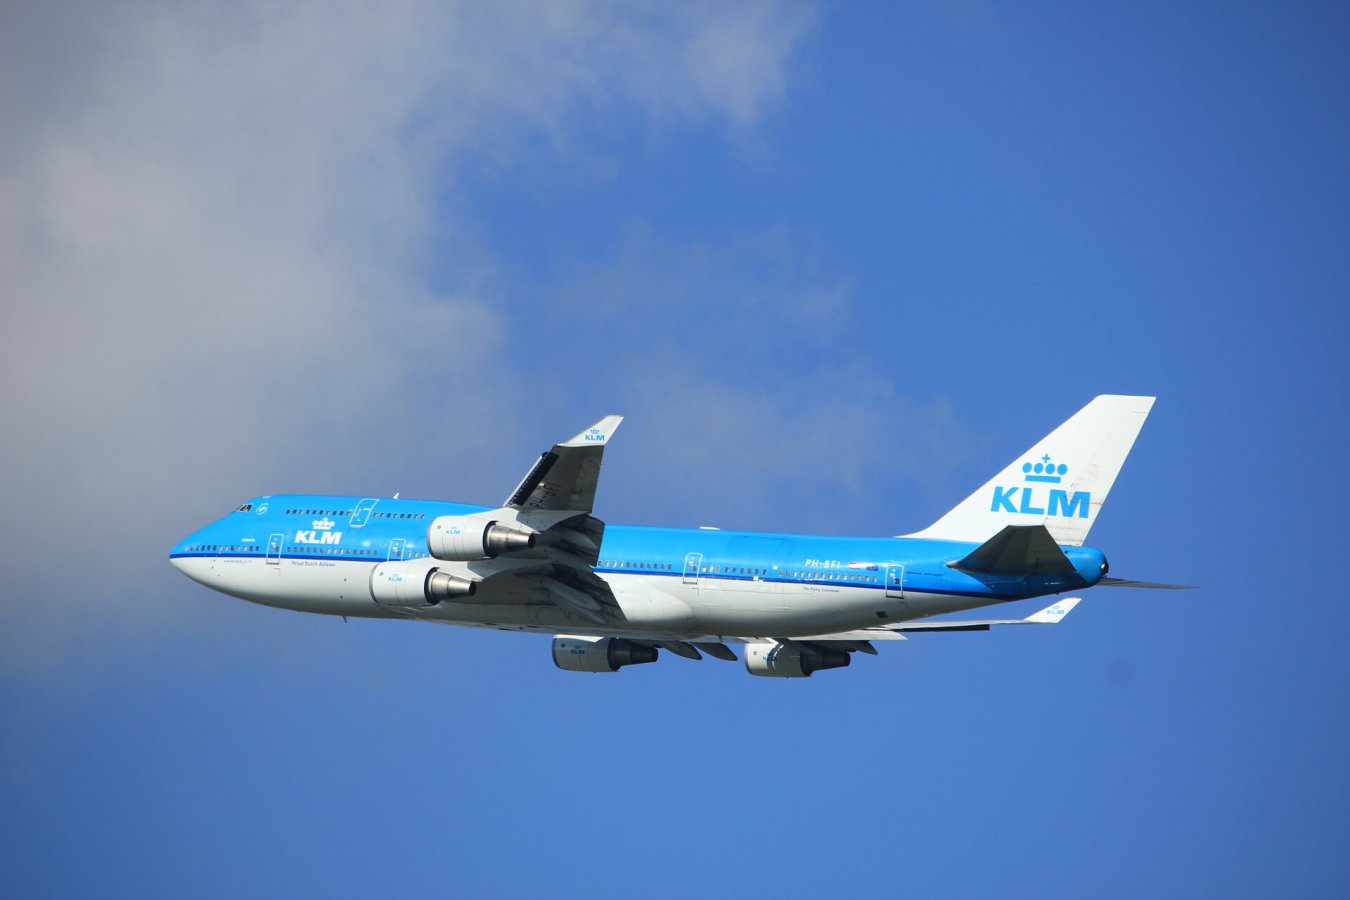 Hollenska flugfélagið KLM kært vegna „grænþvotts“